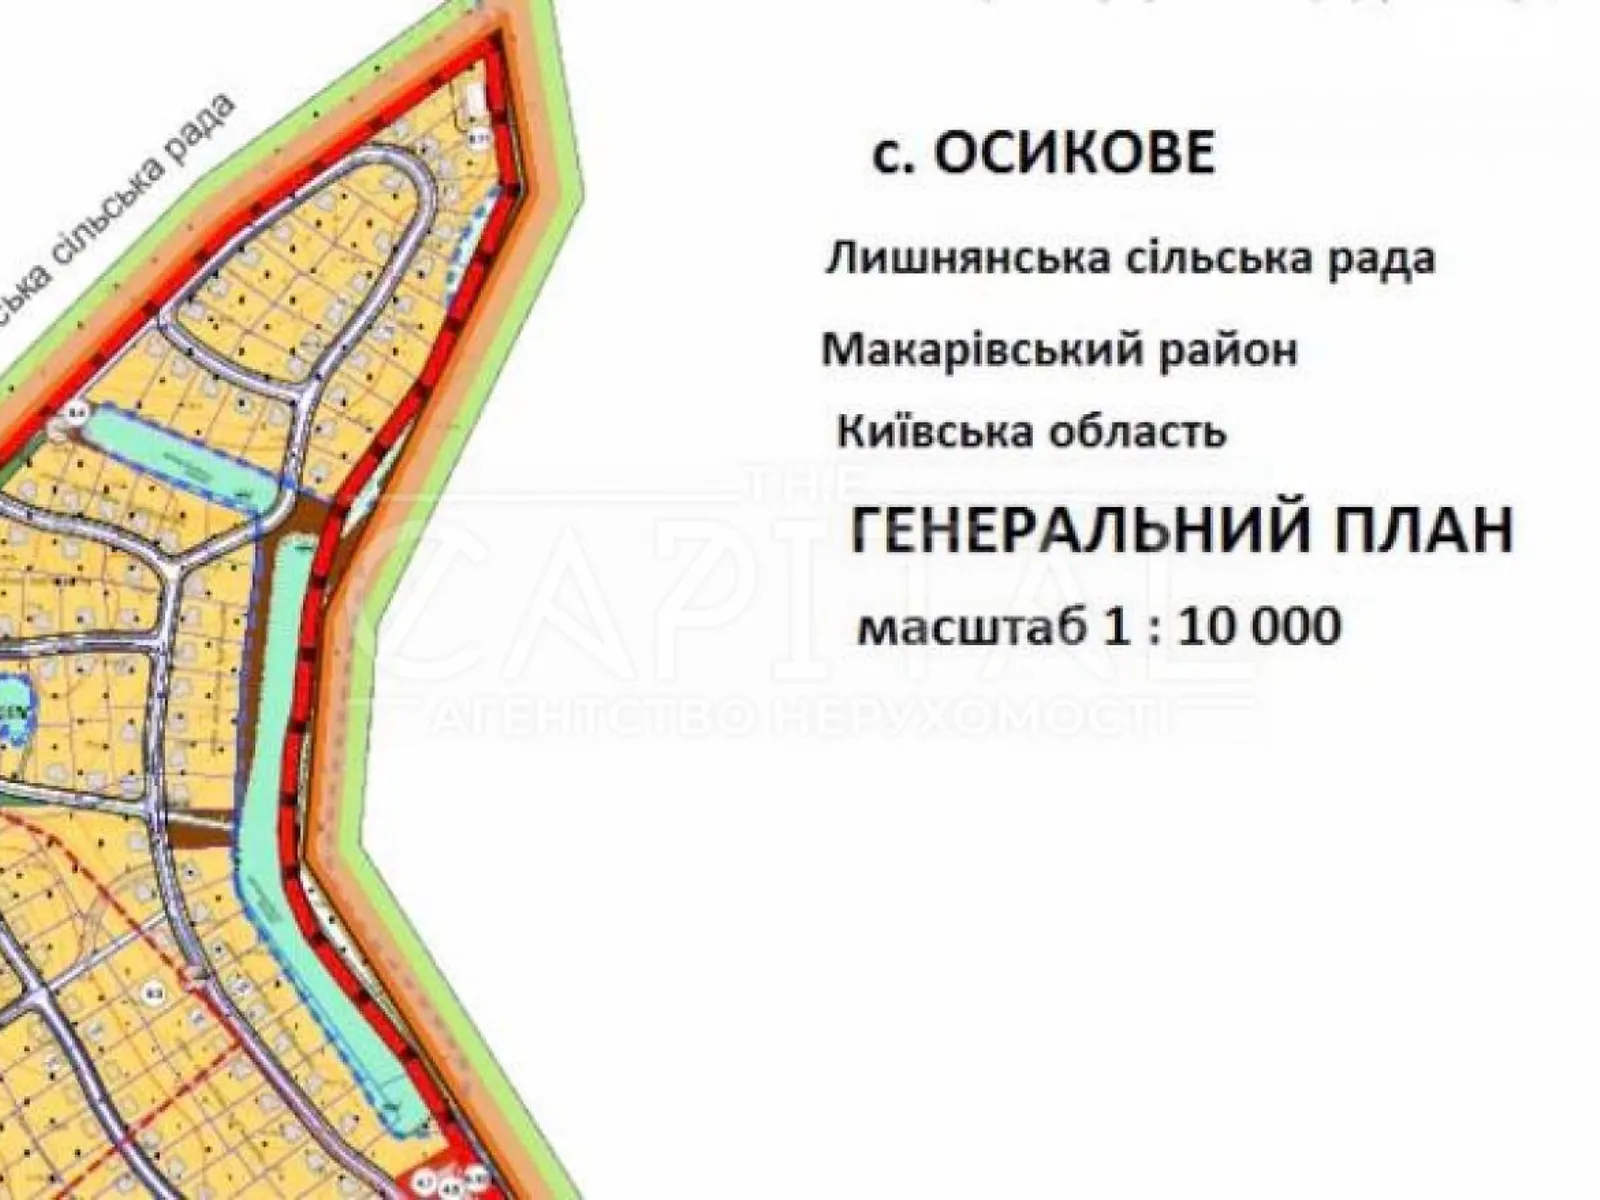 Продается земельный участок 1560 соток в Киевской области - фото 2